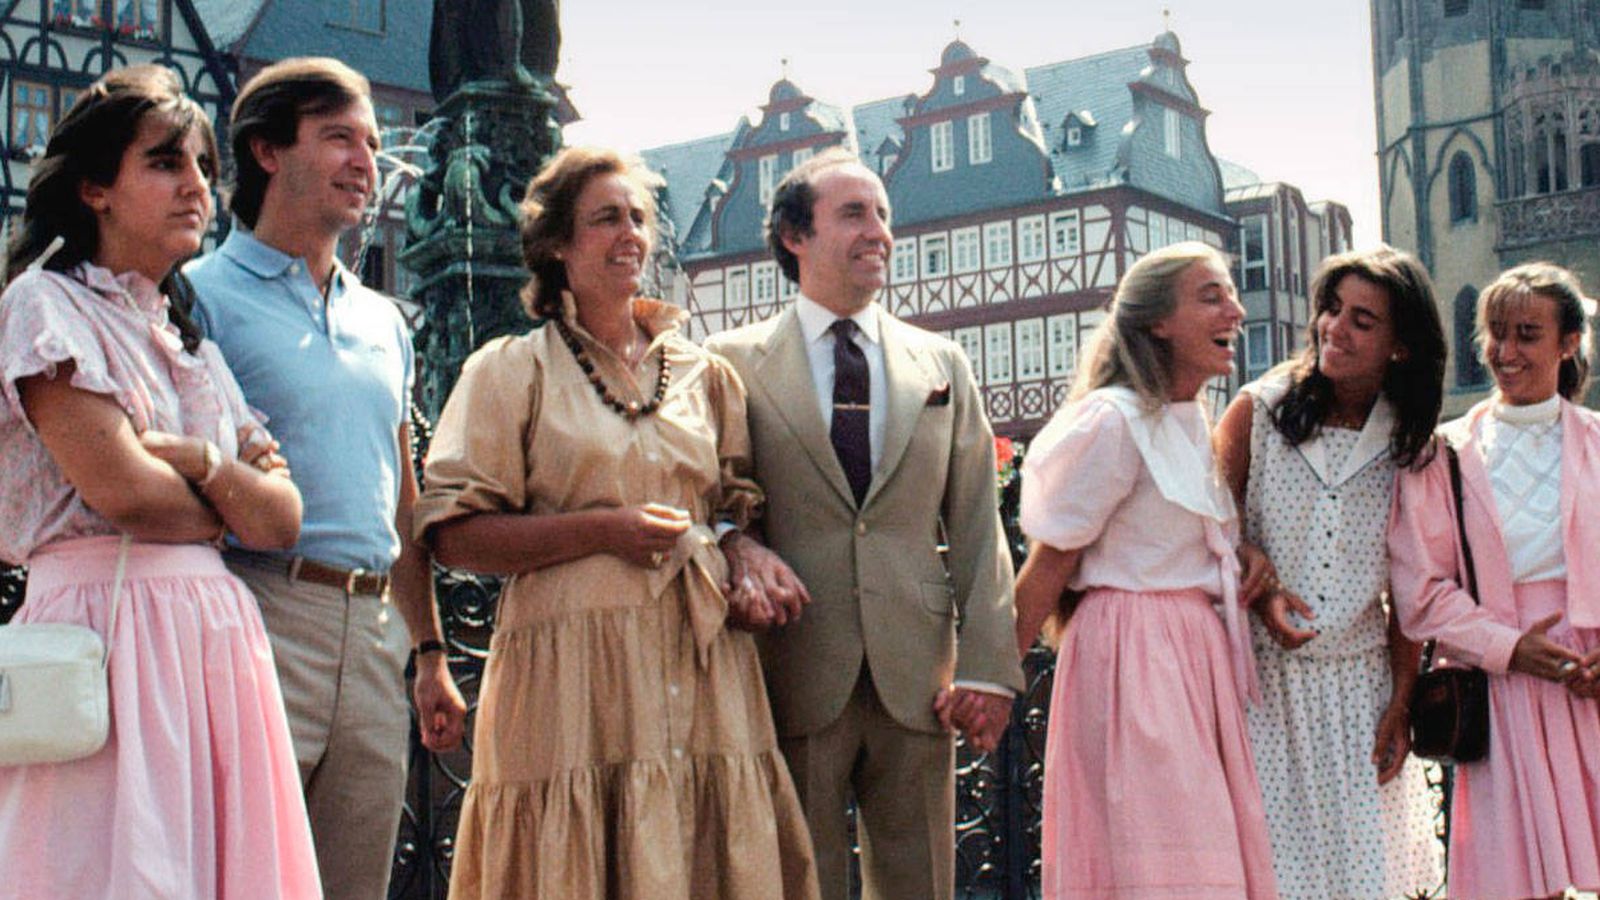 Foto: El matrimonio Ruiz-Mateos con algunos de sus hijos, en una imagen de archivo. (Cordon Press)